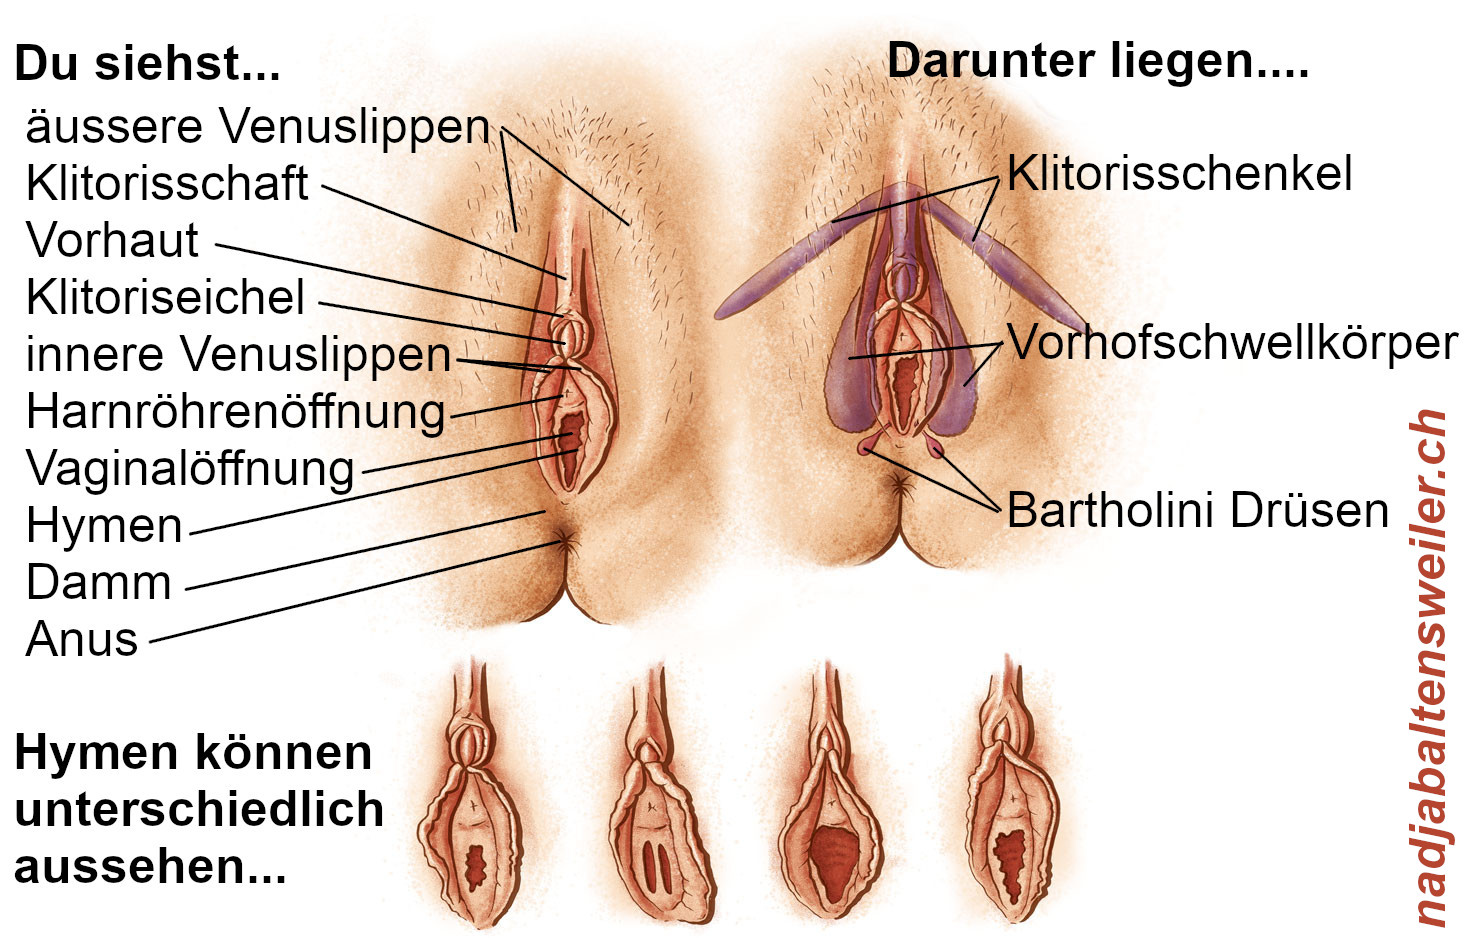 Du siehst insgesamt 6 Zeichnungen von Vulven - 2 größere oben und 4 kleinere unten. Die Abbildung links oben ist beschriftet mit: Du siehst... - äussere Venuslippen - Klitorisschaft - Vorhaut - Klitoriseichel - innere Venuslippen - Harnröhrenöffnung - Vaginalöffnung - Hymen - Damm - Anus Die Abbildung oben rechts ist beschriftet mit: Darunter liegen... - Klitorisschenkel - Vorhofschwellkörper -Bartholini Drüsen Die unteren 4 Abbildungen sind beschriftet mit: "Hymen können unterschiedlich aussehen..."